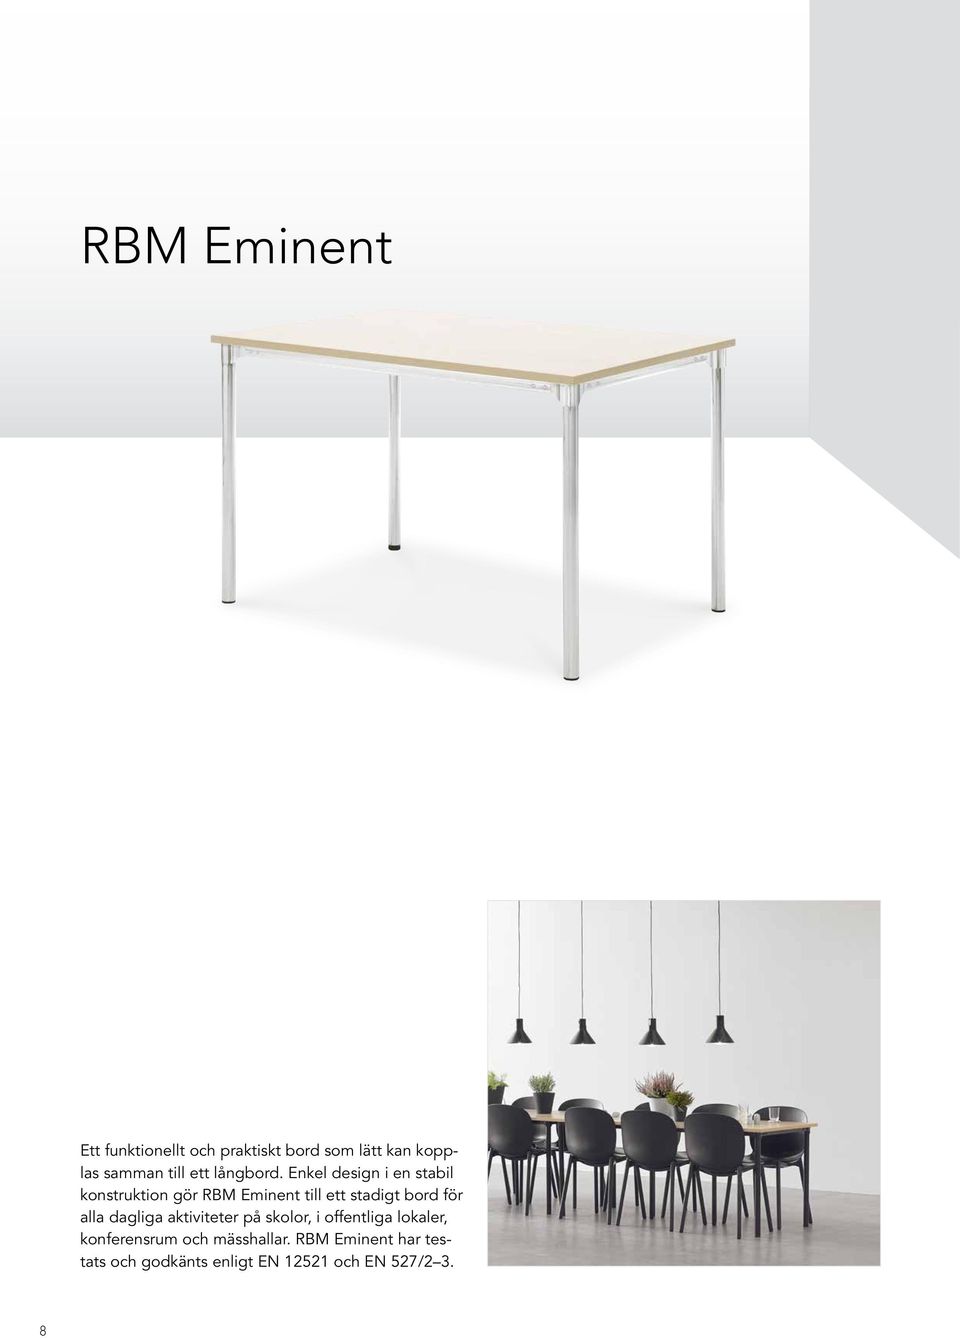 Enkel design i en stabil konstruktion gör RBM Eminent till ett stadigt bord för